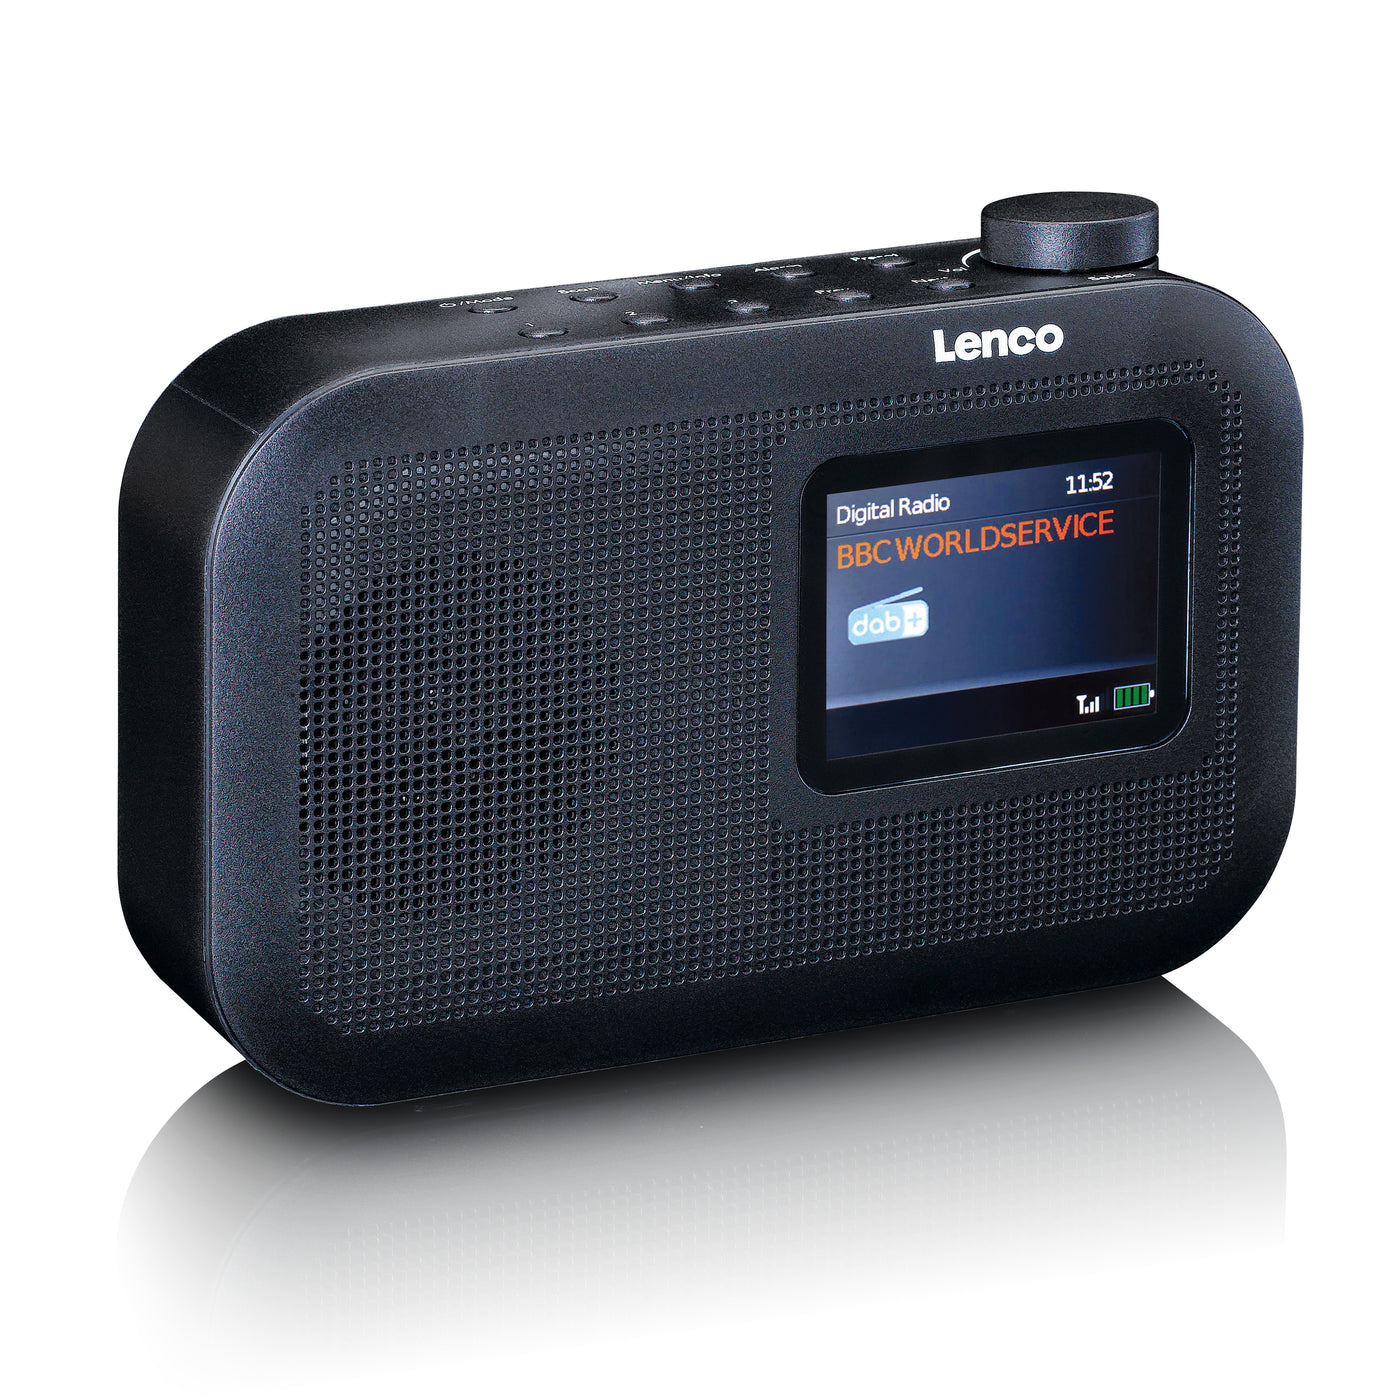 Lenco PDR-026BK - Tragbares DAB+/FM-Radio mit Bluetooth® - Schwarz